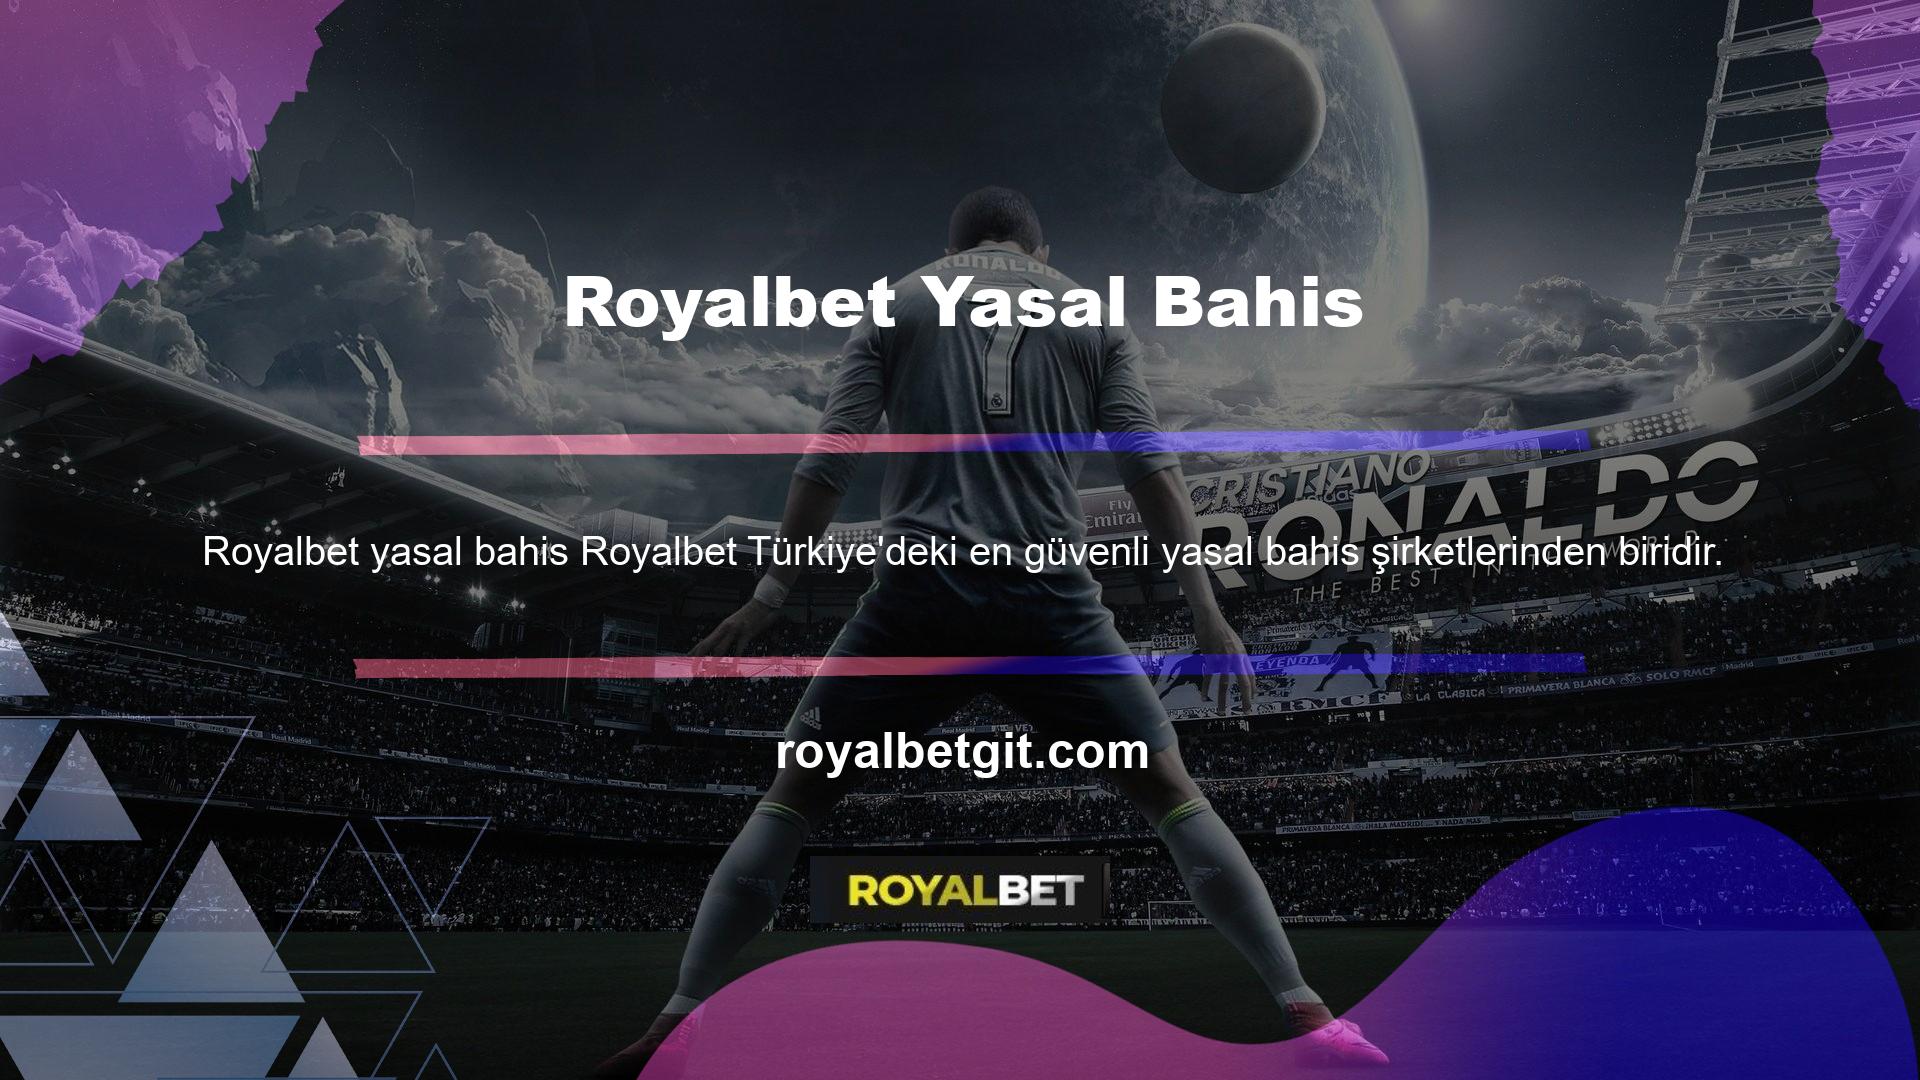 Royalbet genel olarak Türk ruletine ilgi duyan poker oyuncuları için en güvenilir ve saygın bahis sitelerinden biridir